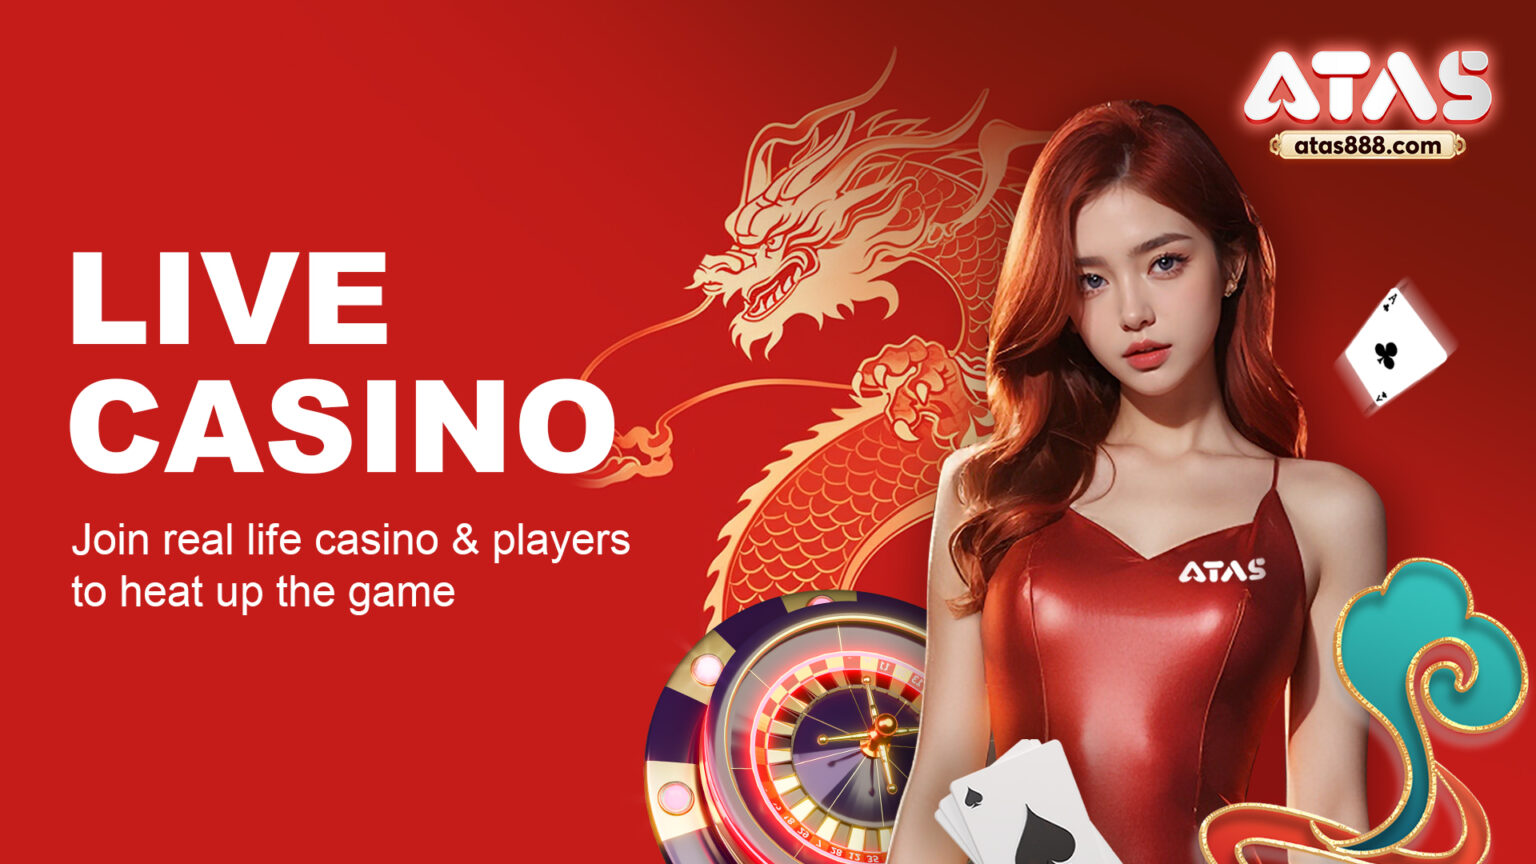 live casino atas casino malaysia